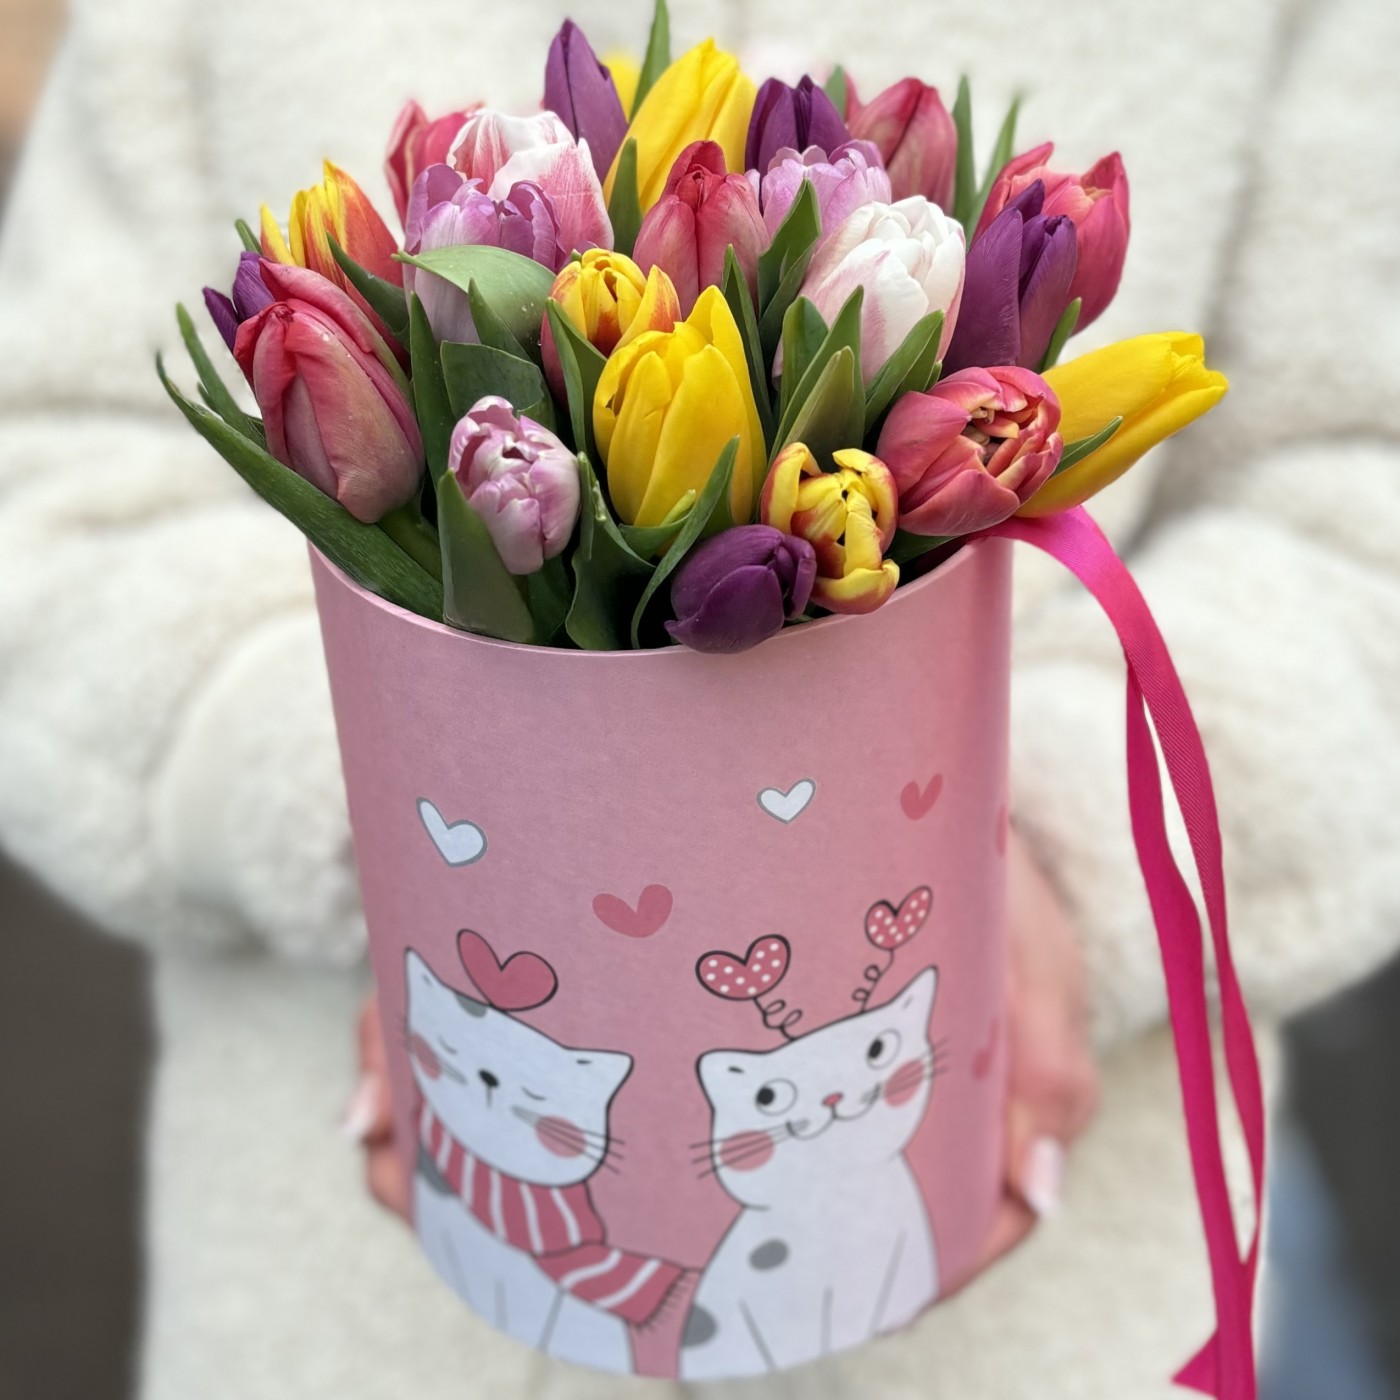 25 тюльпанов в коробке Котики